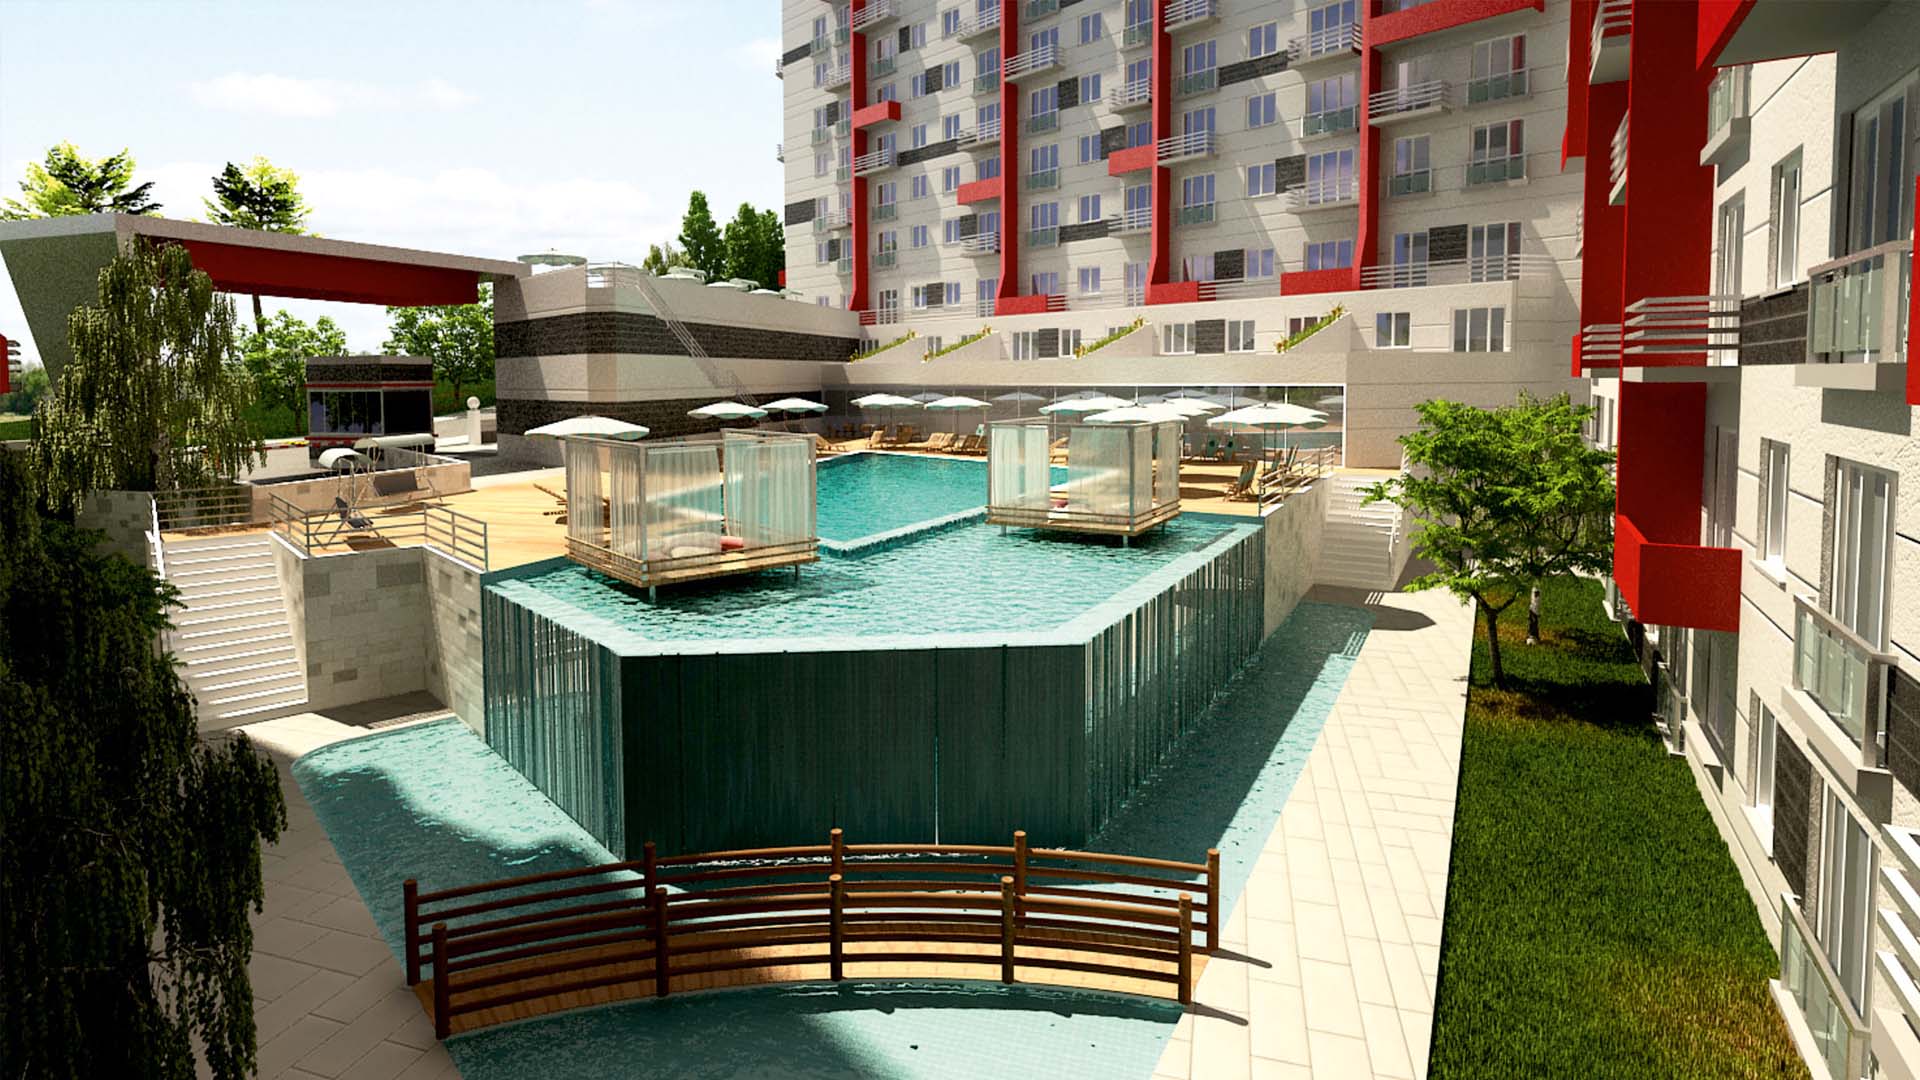 شقق سكنية في اسطنبول بأسعار منافسة 1